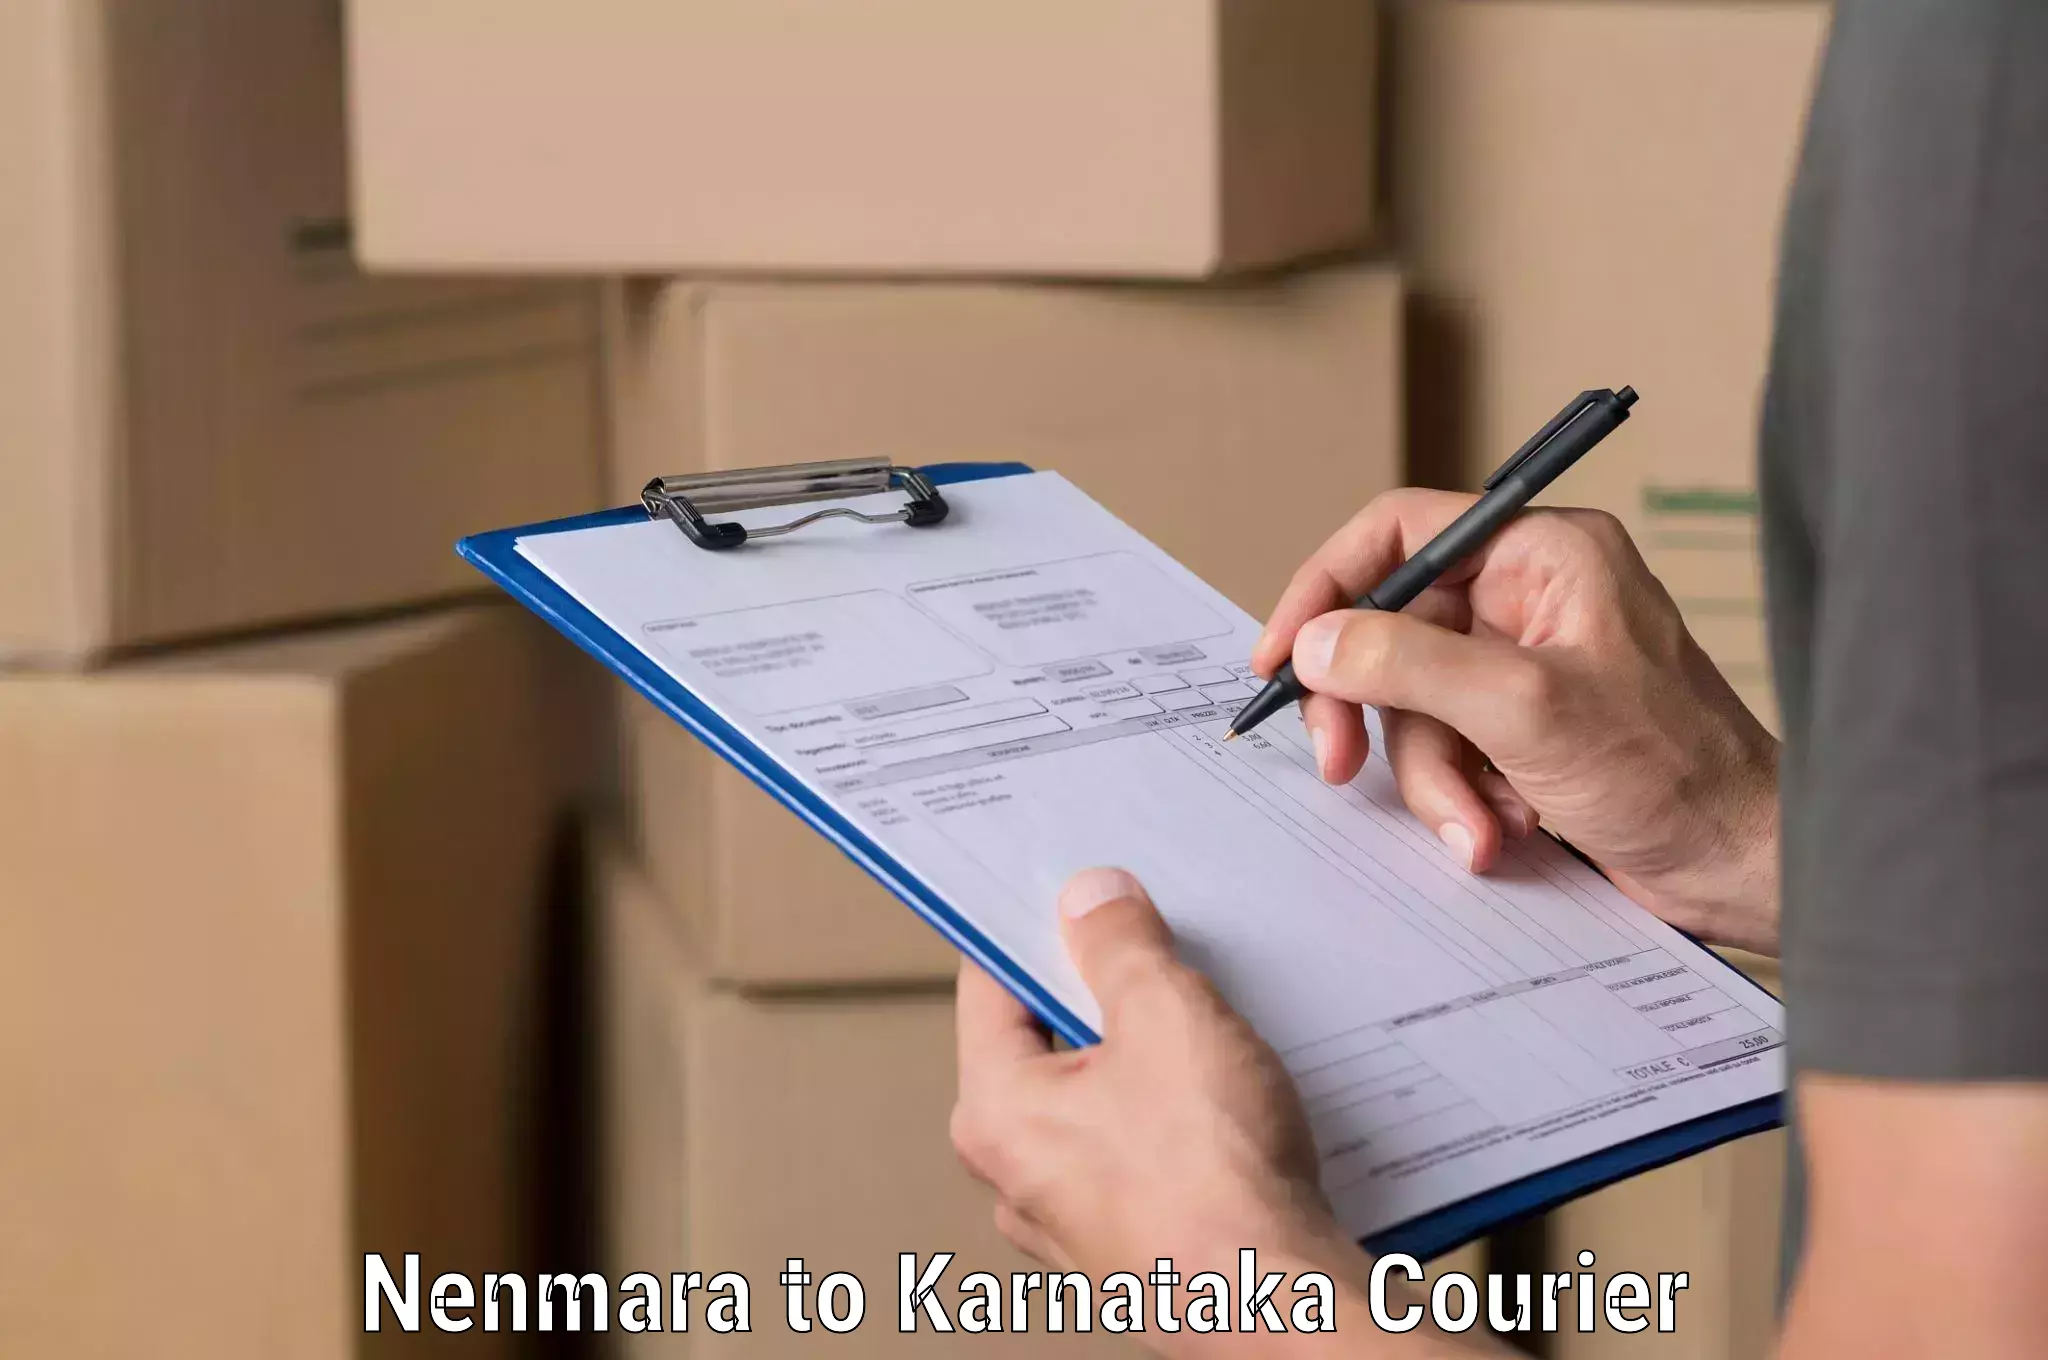 Urgent courier needs Nenmara to Dandeli